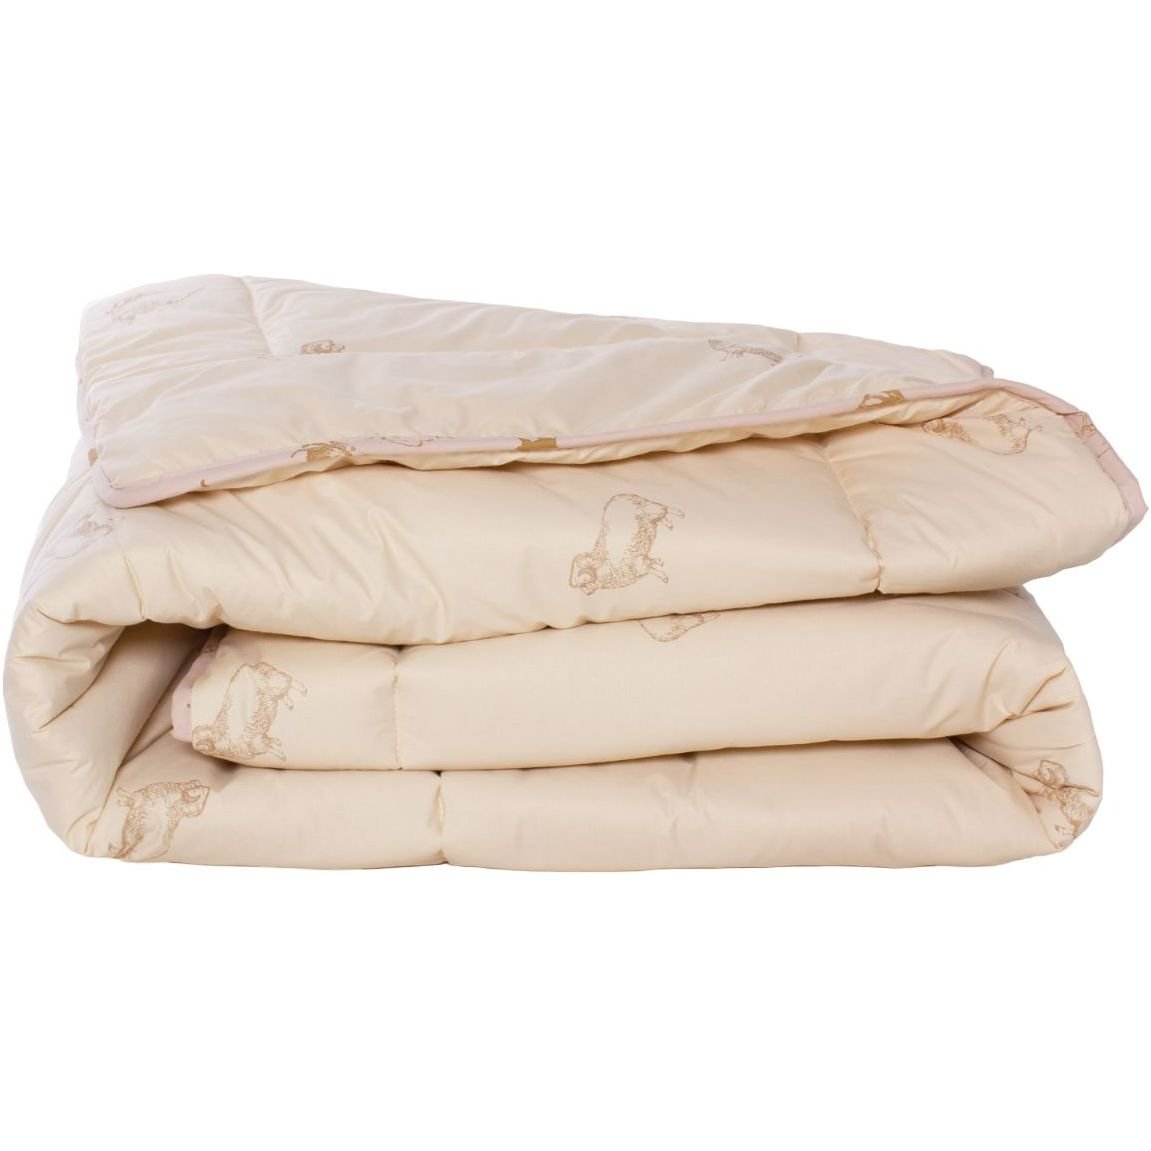 Одеяло шерстяное MirSon Gold Camel №024, зимнее, 172x205 см, кремовое - фото 1